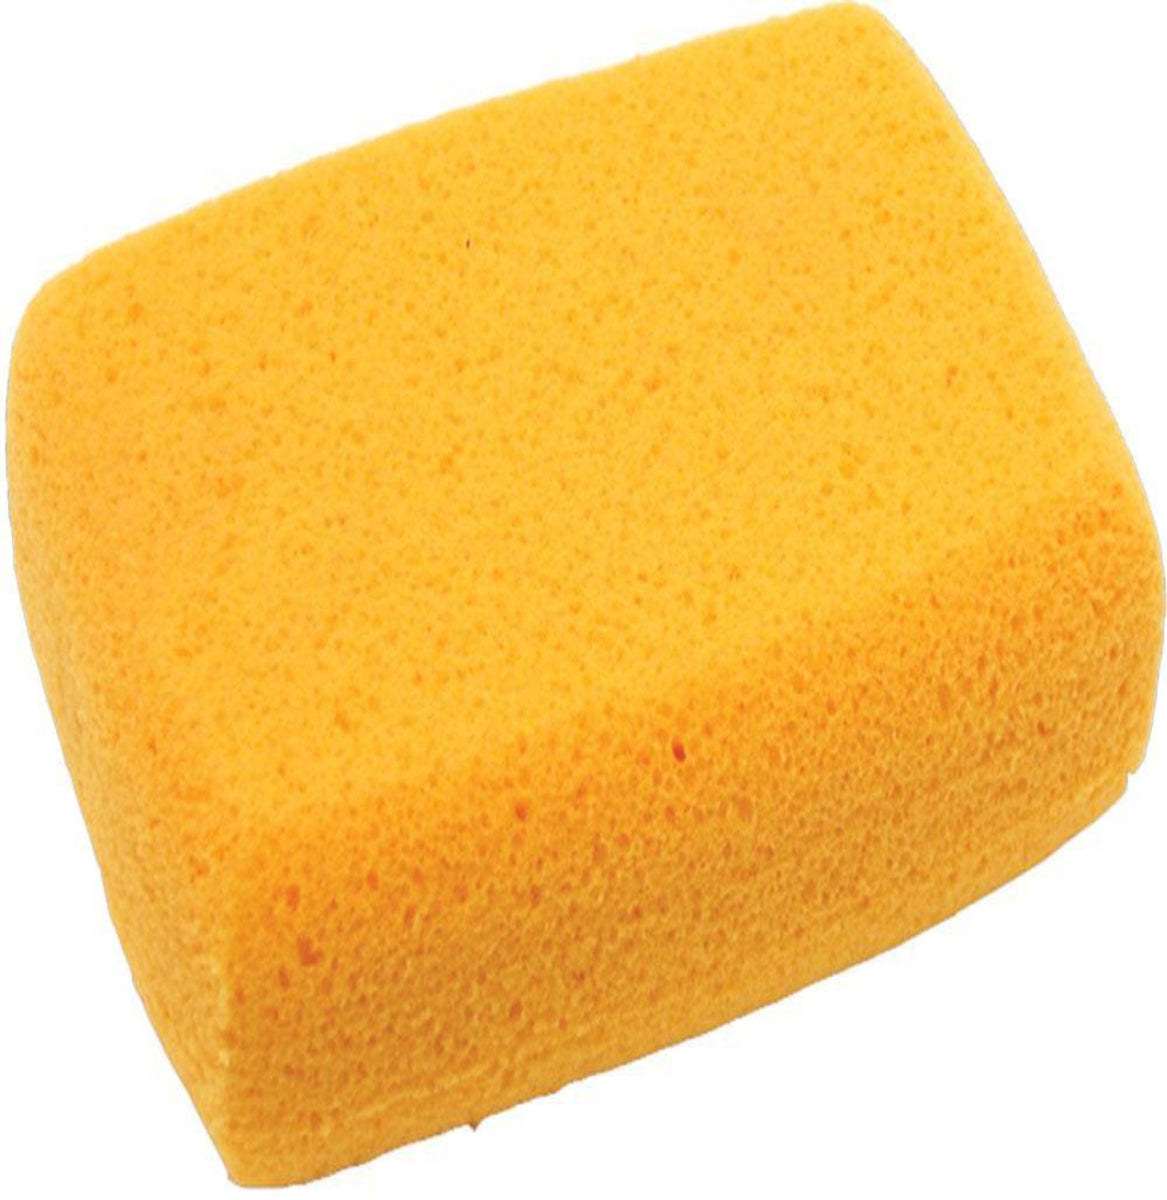 Grouting Sponge for Tiling